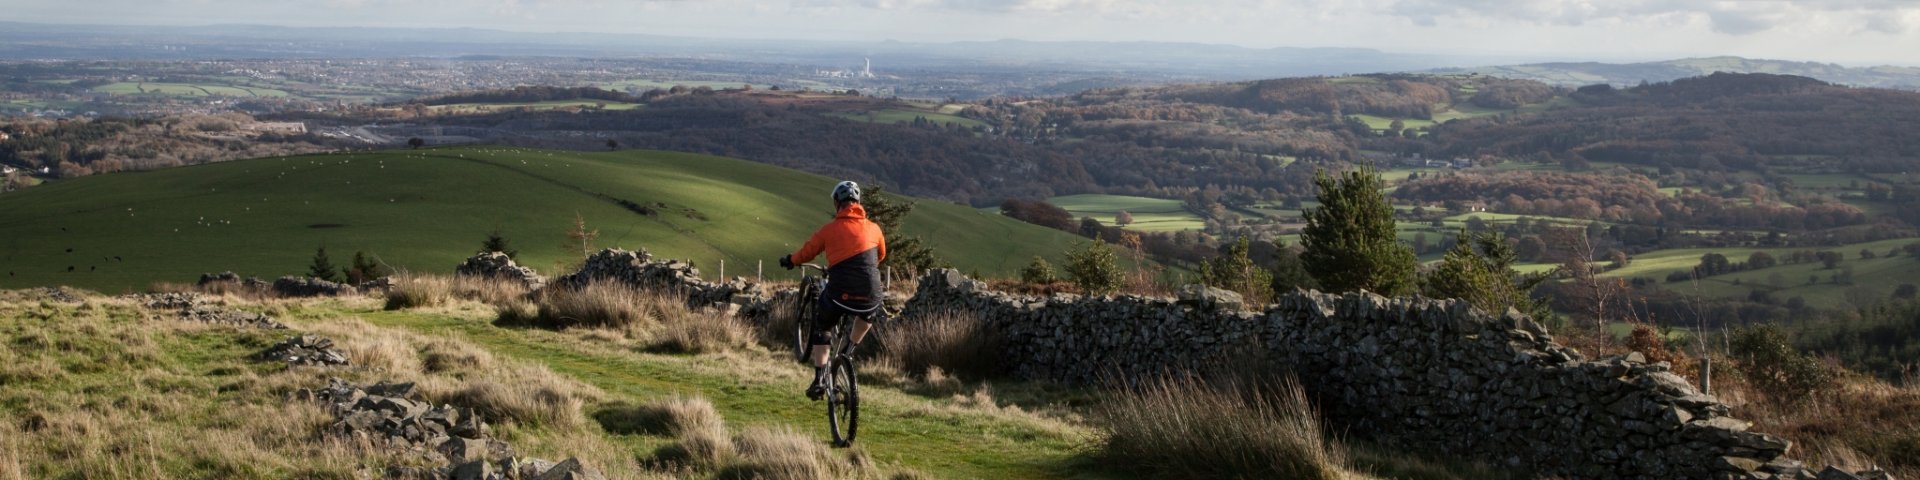 Das Trailrinding in Clwyd in Wales bietet schöne Panoramen.